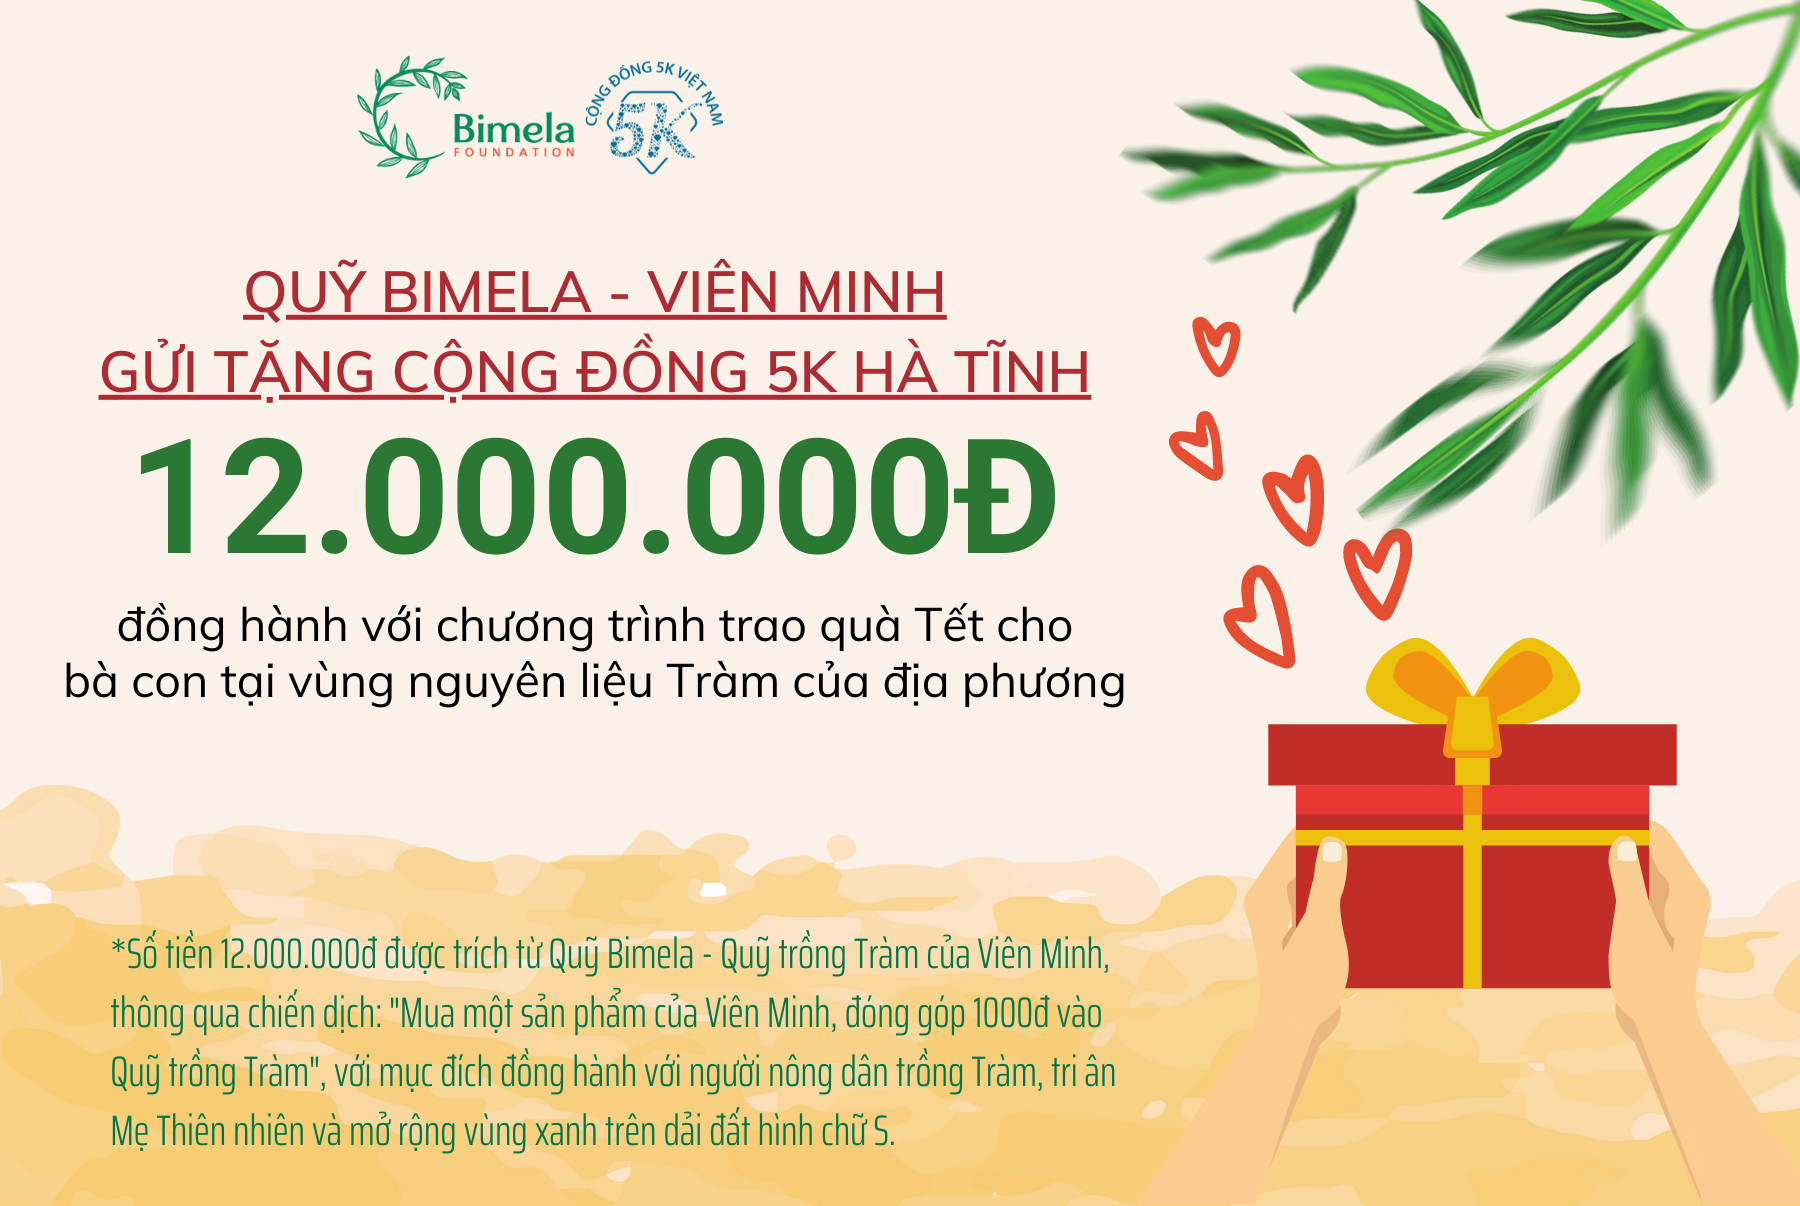 Quỹ Bimela đã trao tặng 12.000.000đ cho cộng đồng 5K Việt Nam tại Hà Tĩnh